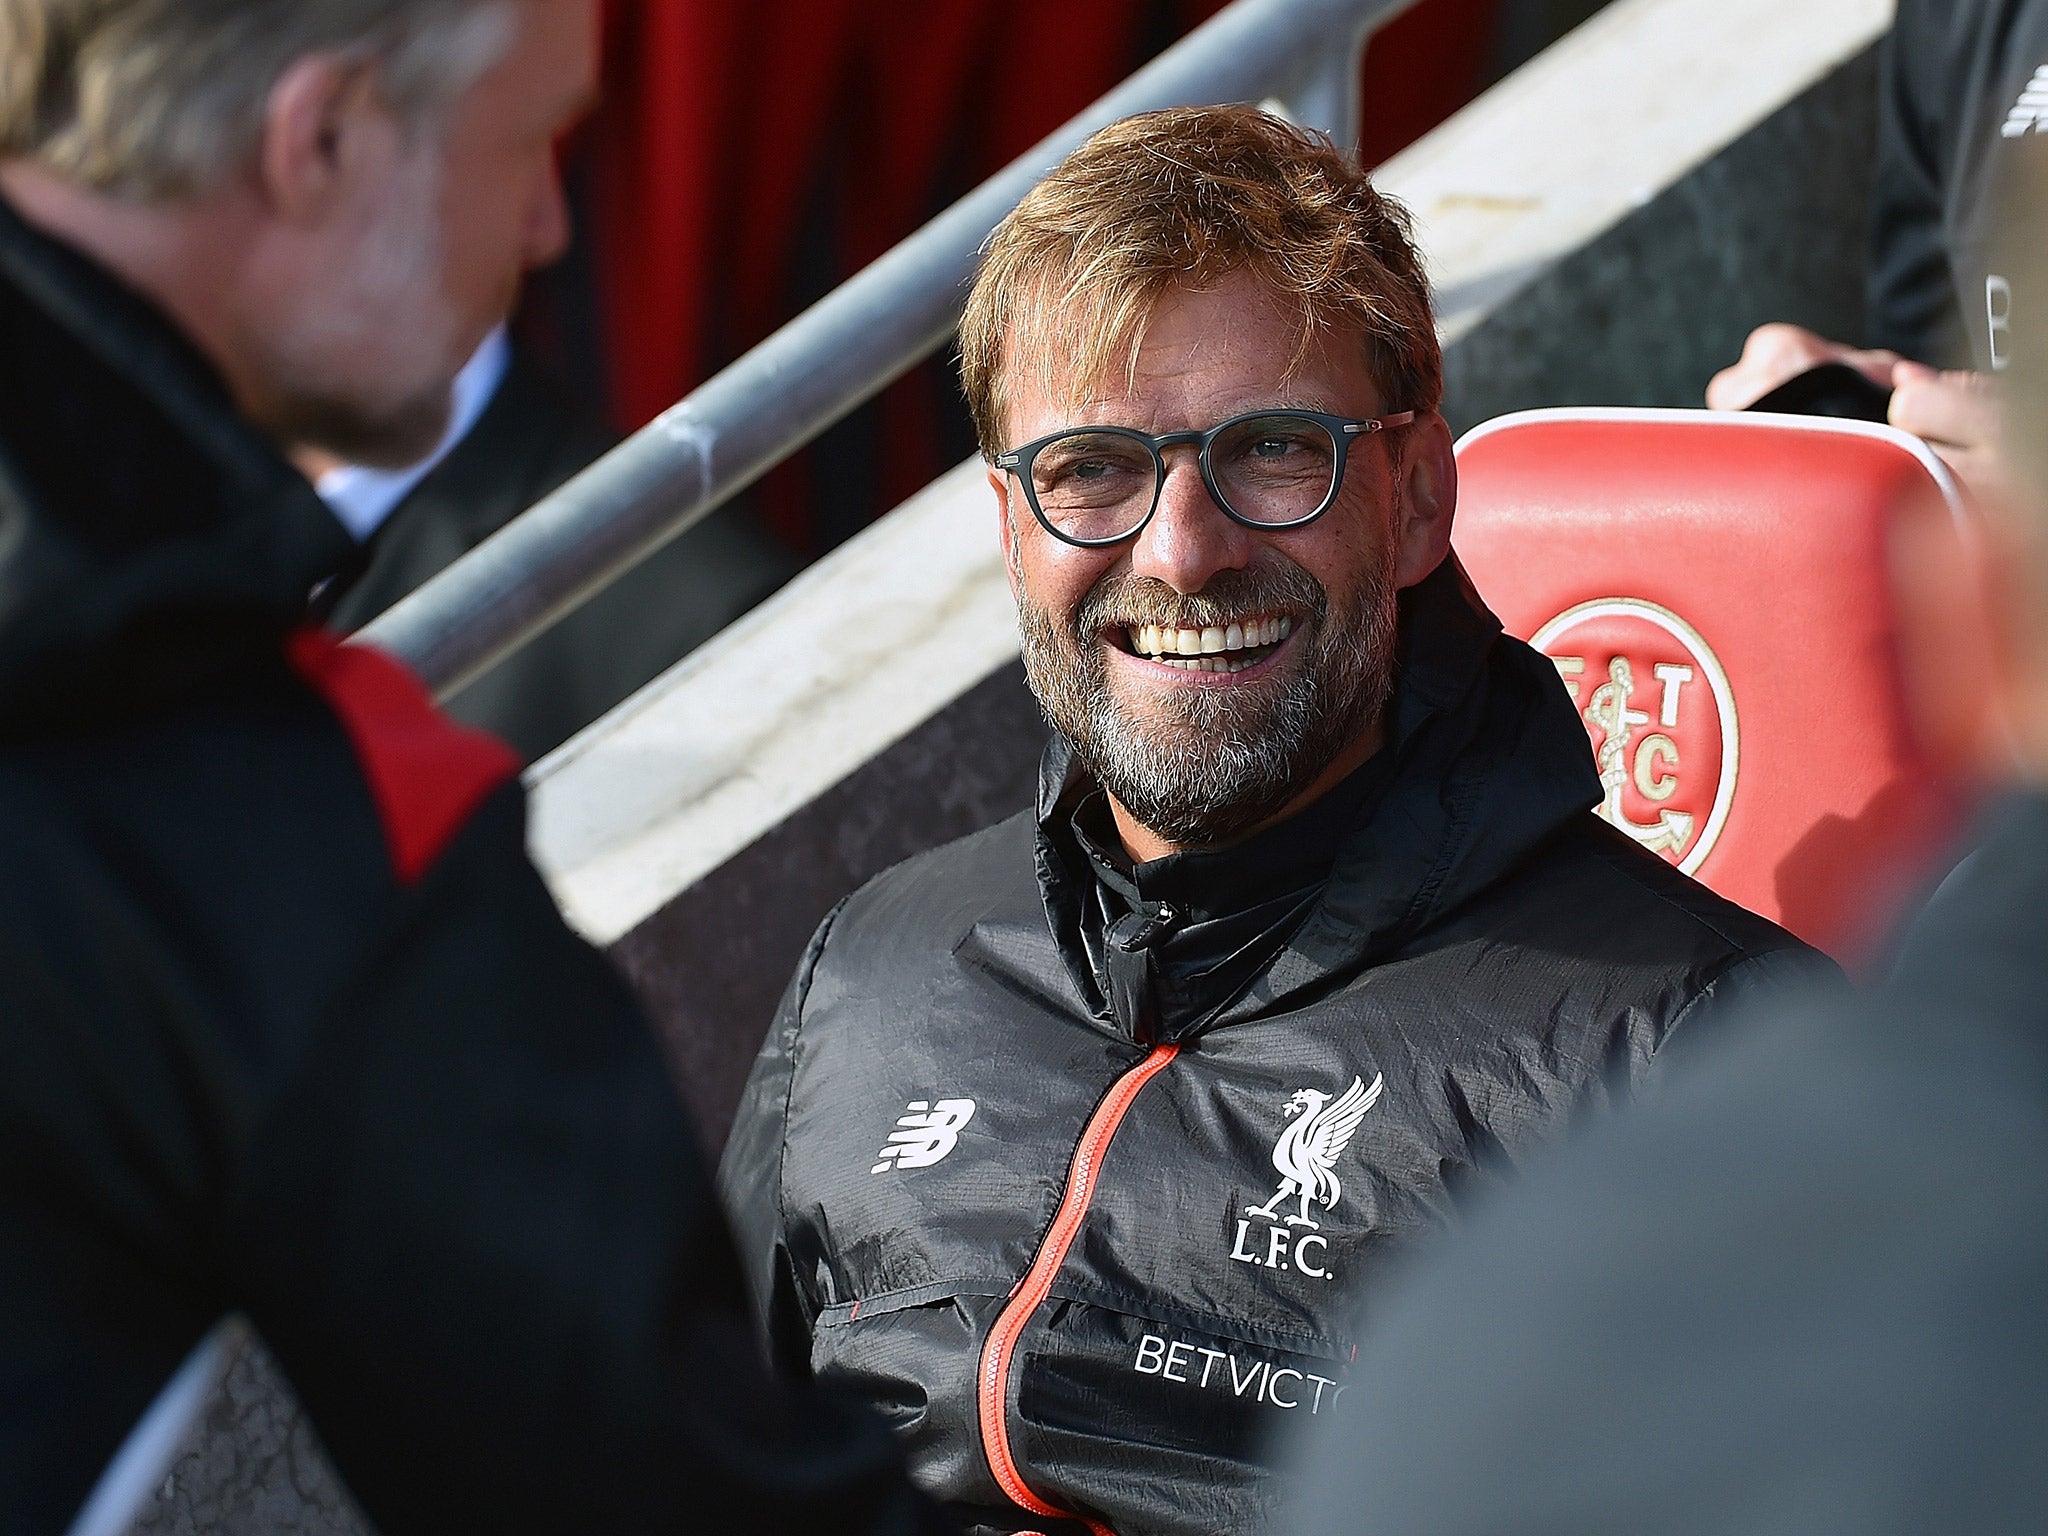 Jurgen Klopp was in good spirits after Liverpool's comfortable 5-0 win over Fleetwood Town